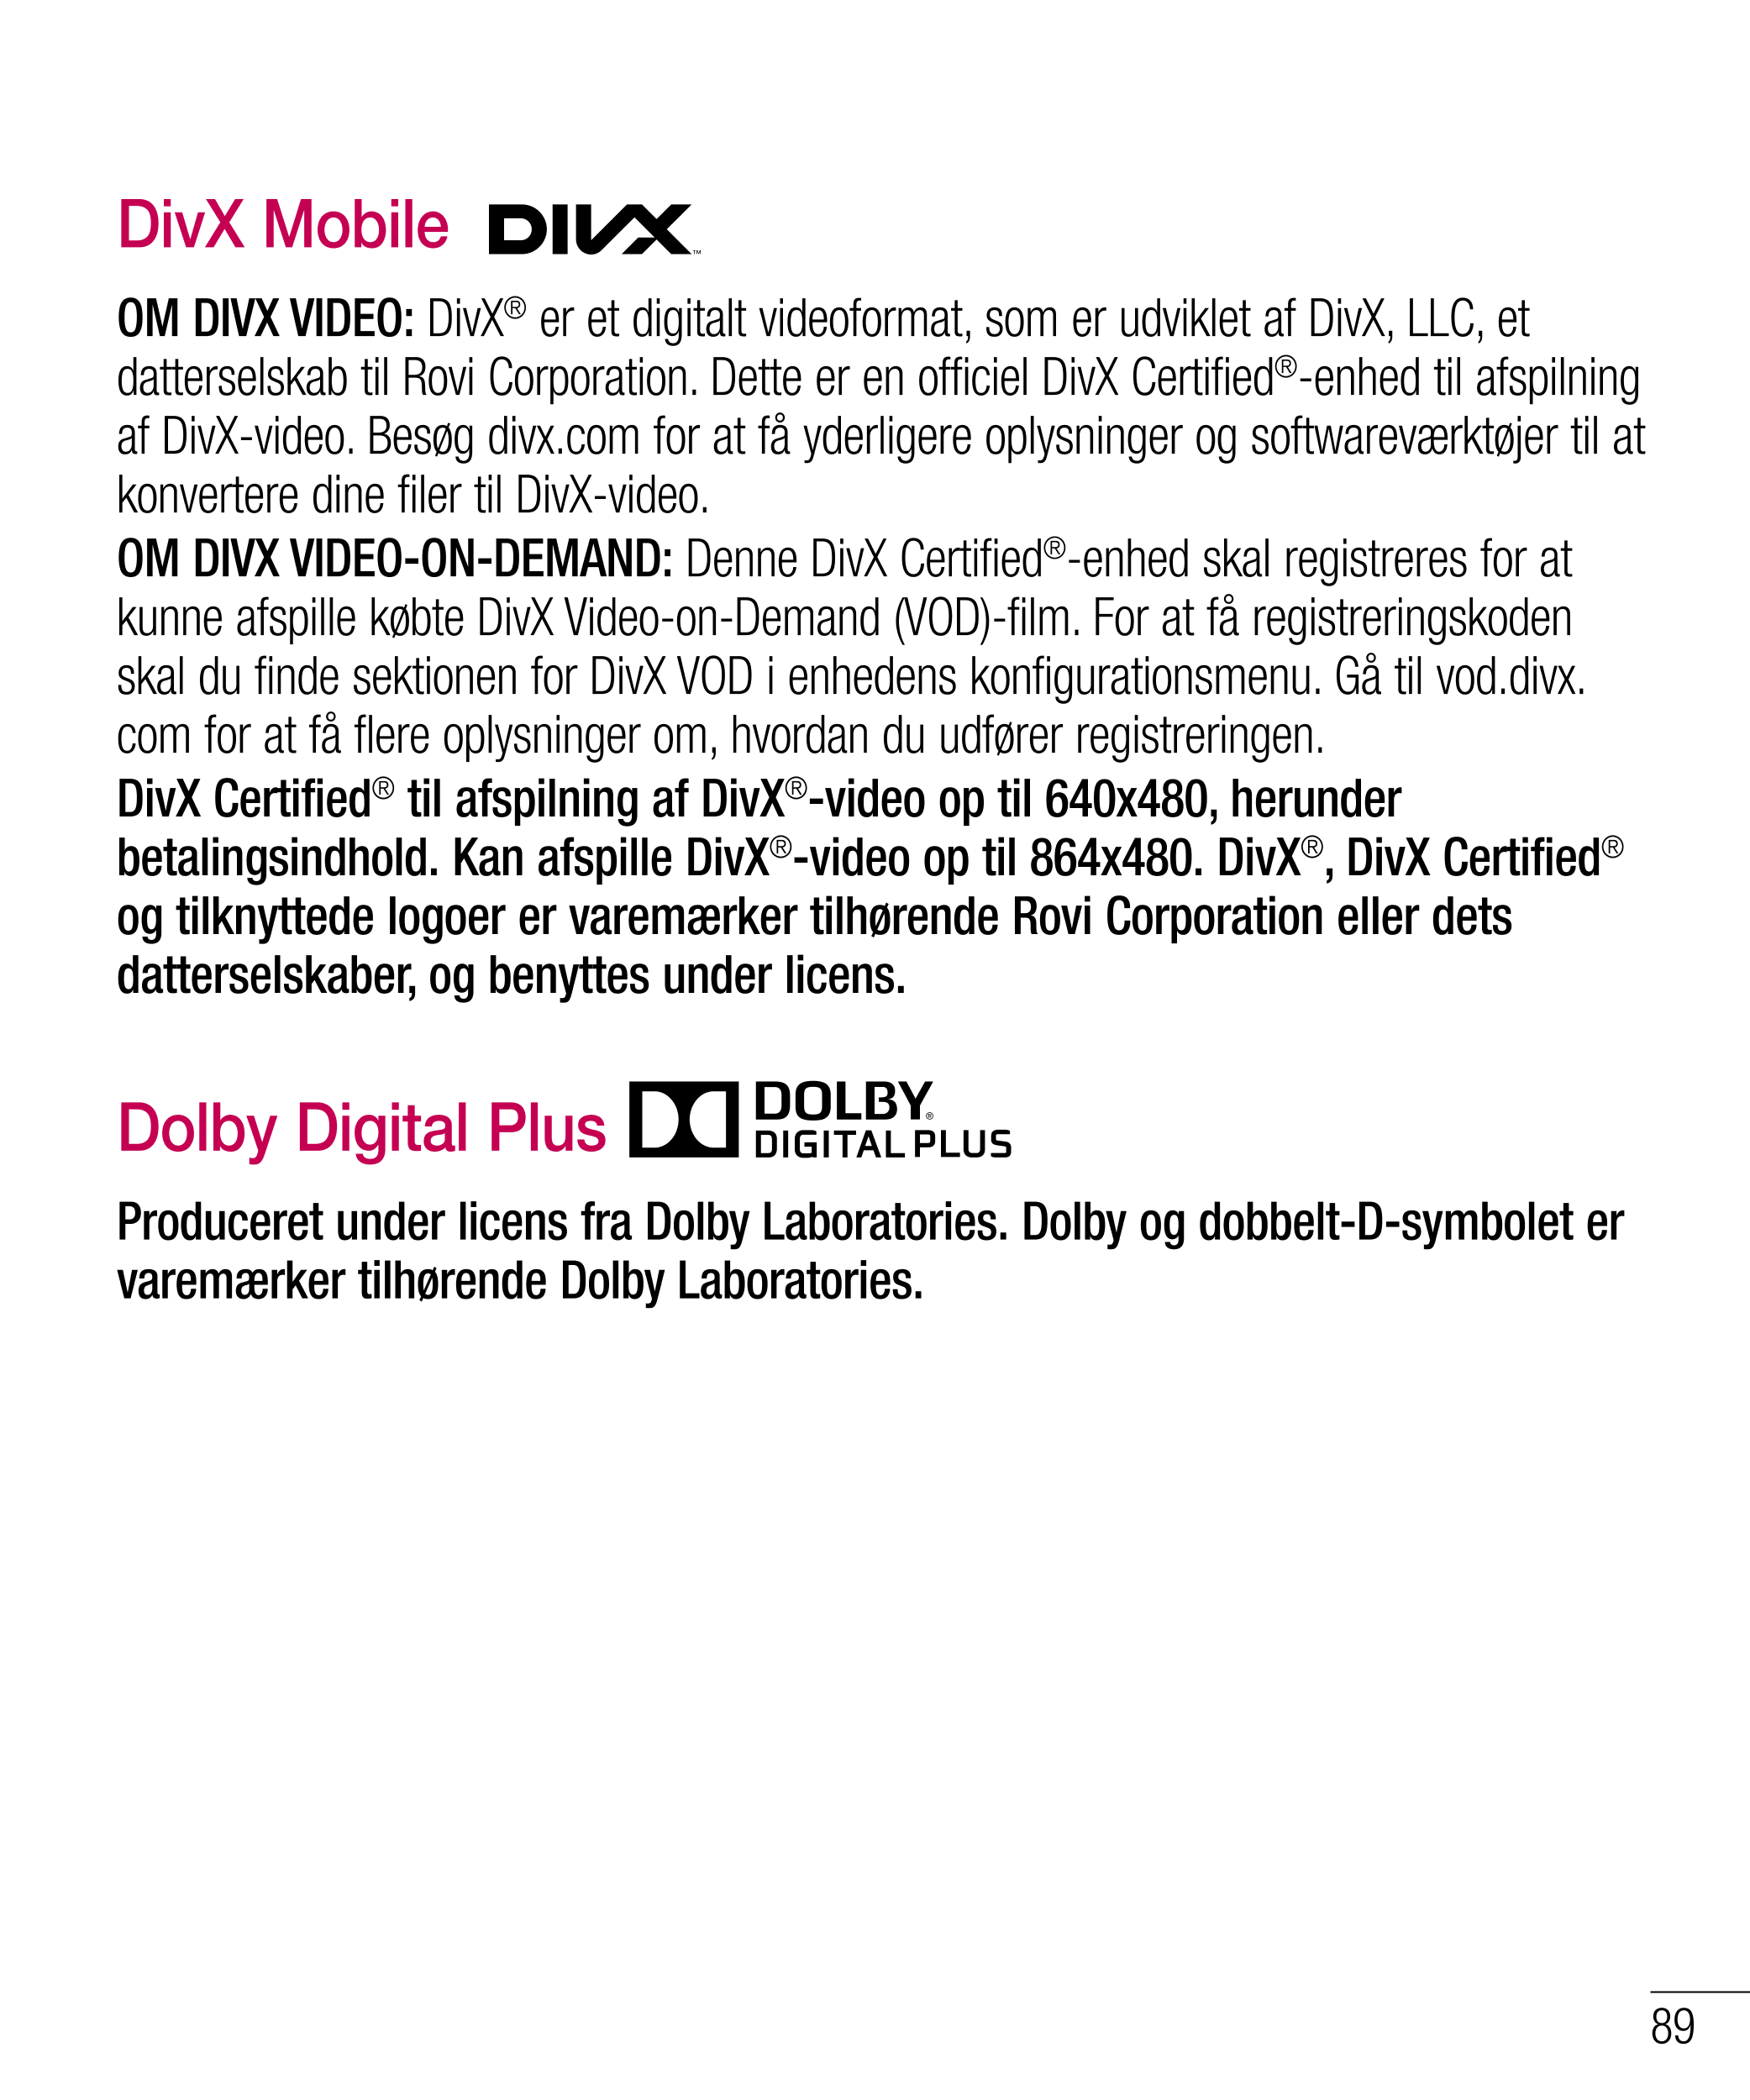 DivX Mobile  
OM DIVX VIDEO: DivX® er et digitalt videoformat, som er udviklet af DivX, LLC, et 
datterselskab til Rovi Corporat